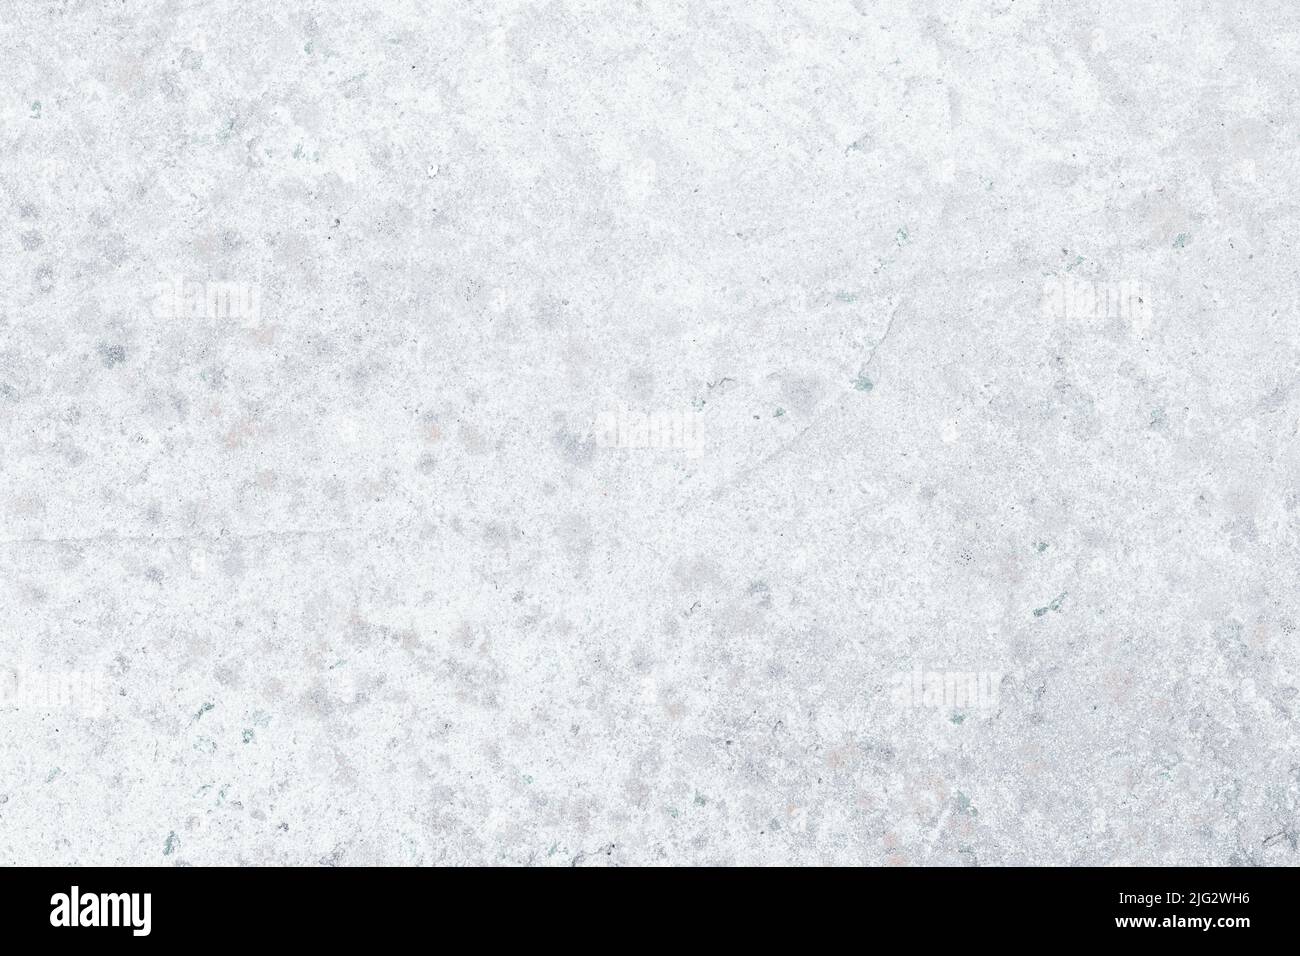 Textura de betón blanco, fondo de hormigón gris claro, superficie de pared de cemento. Estuco, yeso. Espacio en blanco. Diseño de fondo. Fondo de pantalla Natural grunge, wea Foto de stock